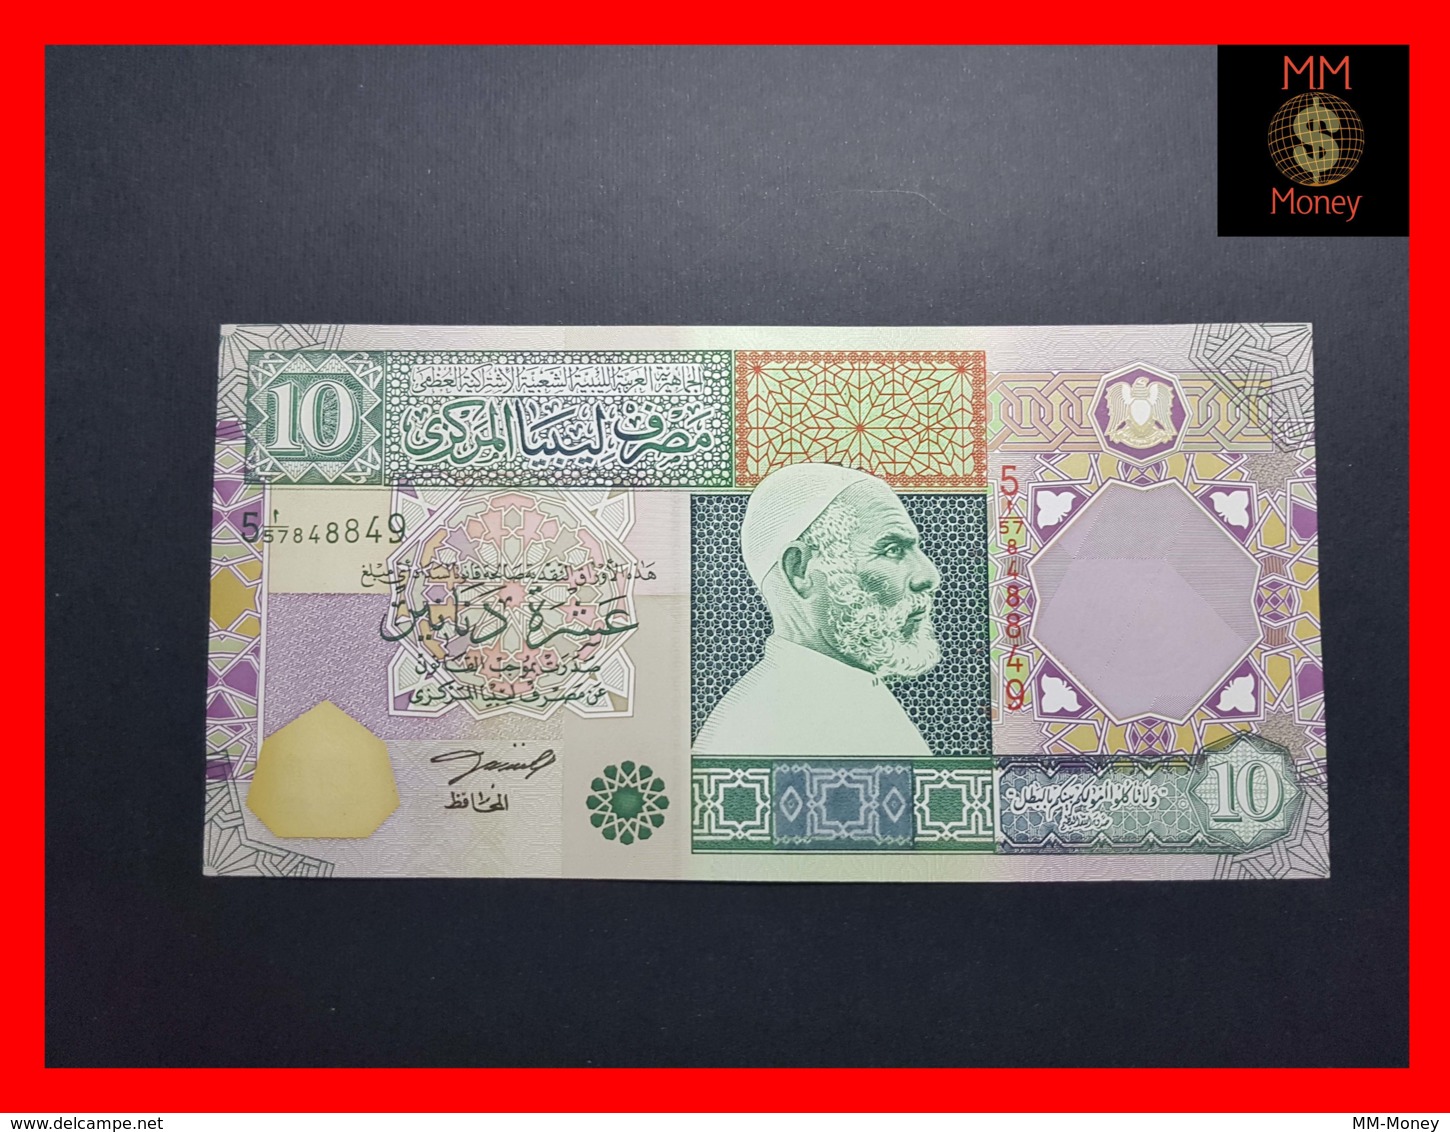 LIBYA 10 Dinars  2002  P. 66  UNC - Libyen